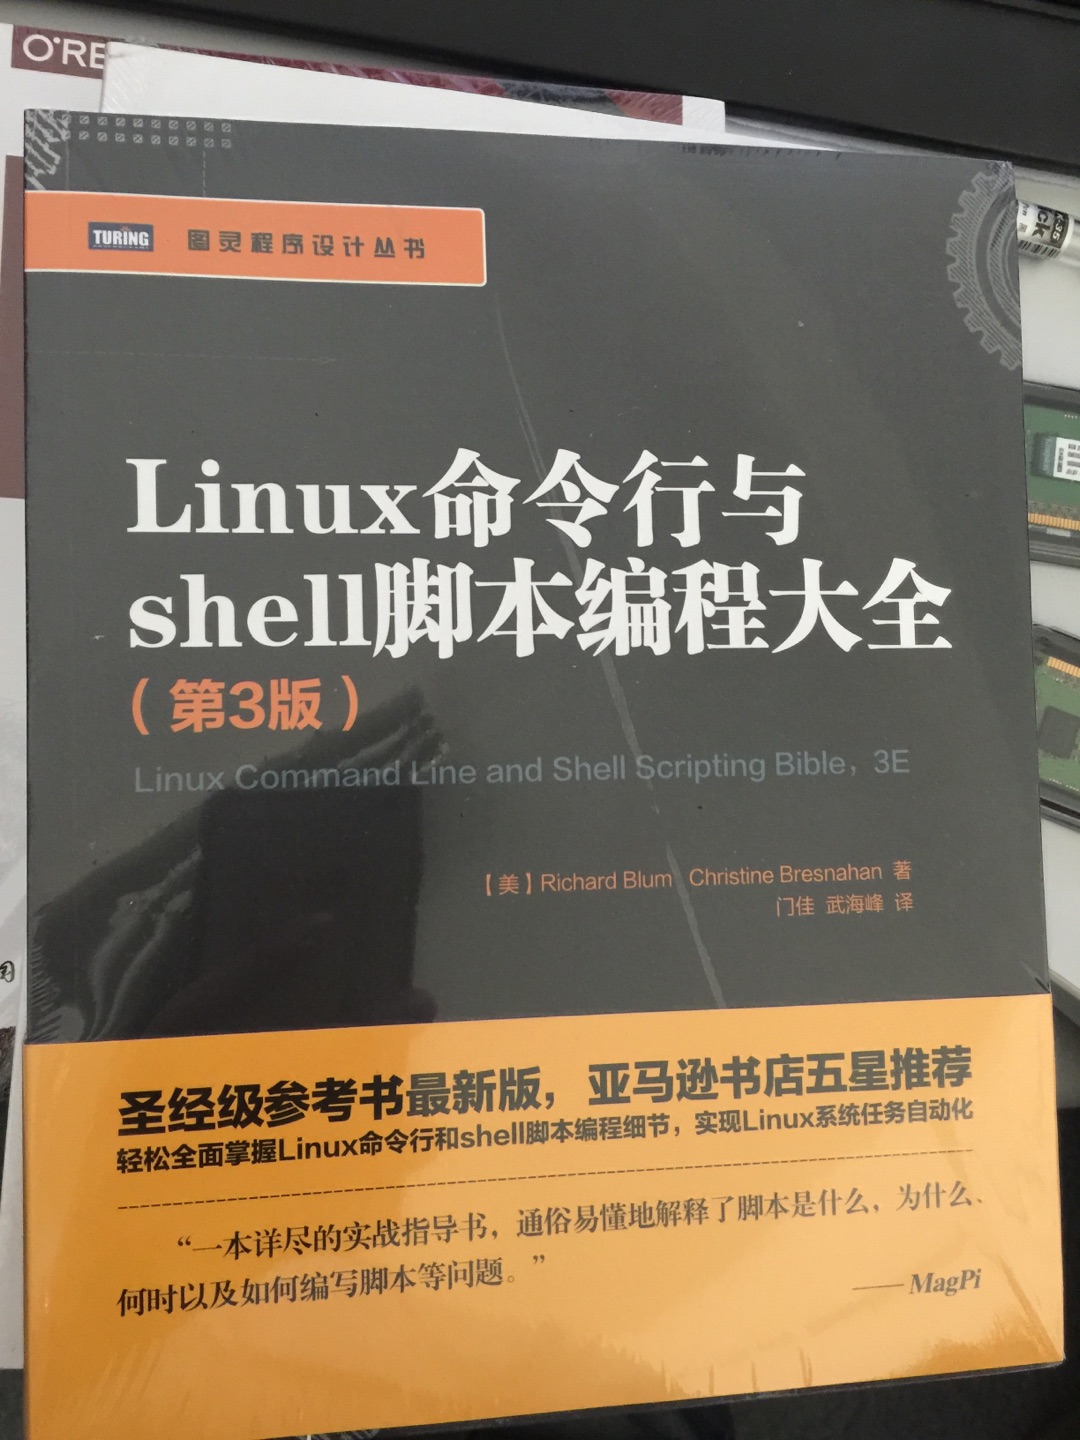 Linux命令行和shell脚本编程大全内容介绍丰富